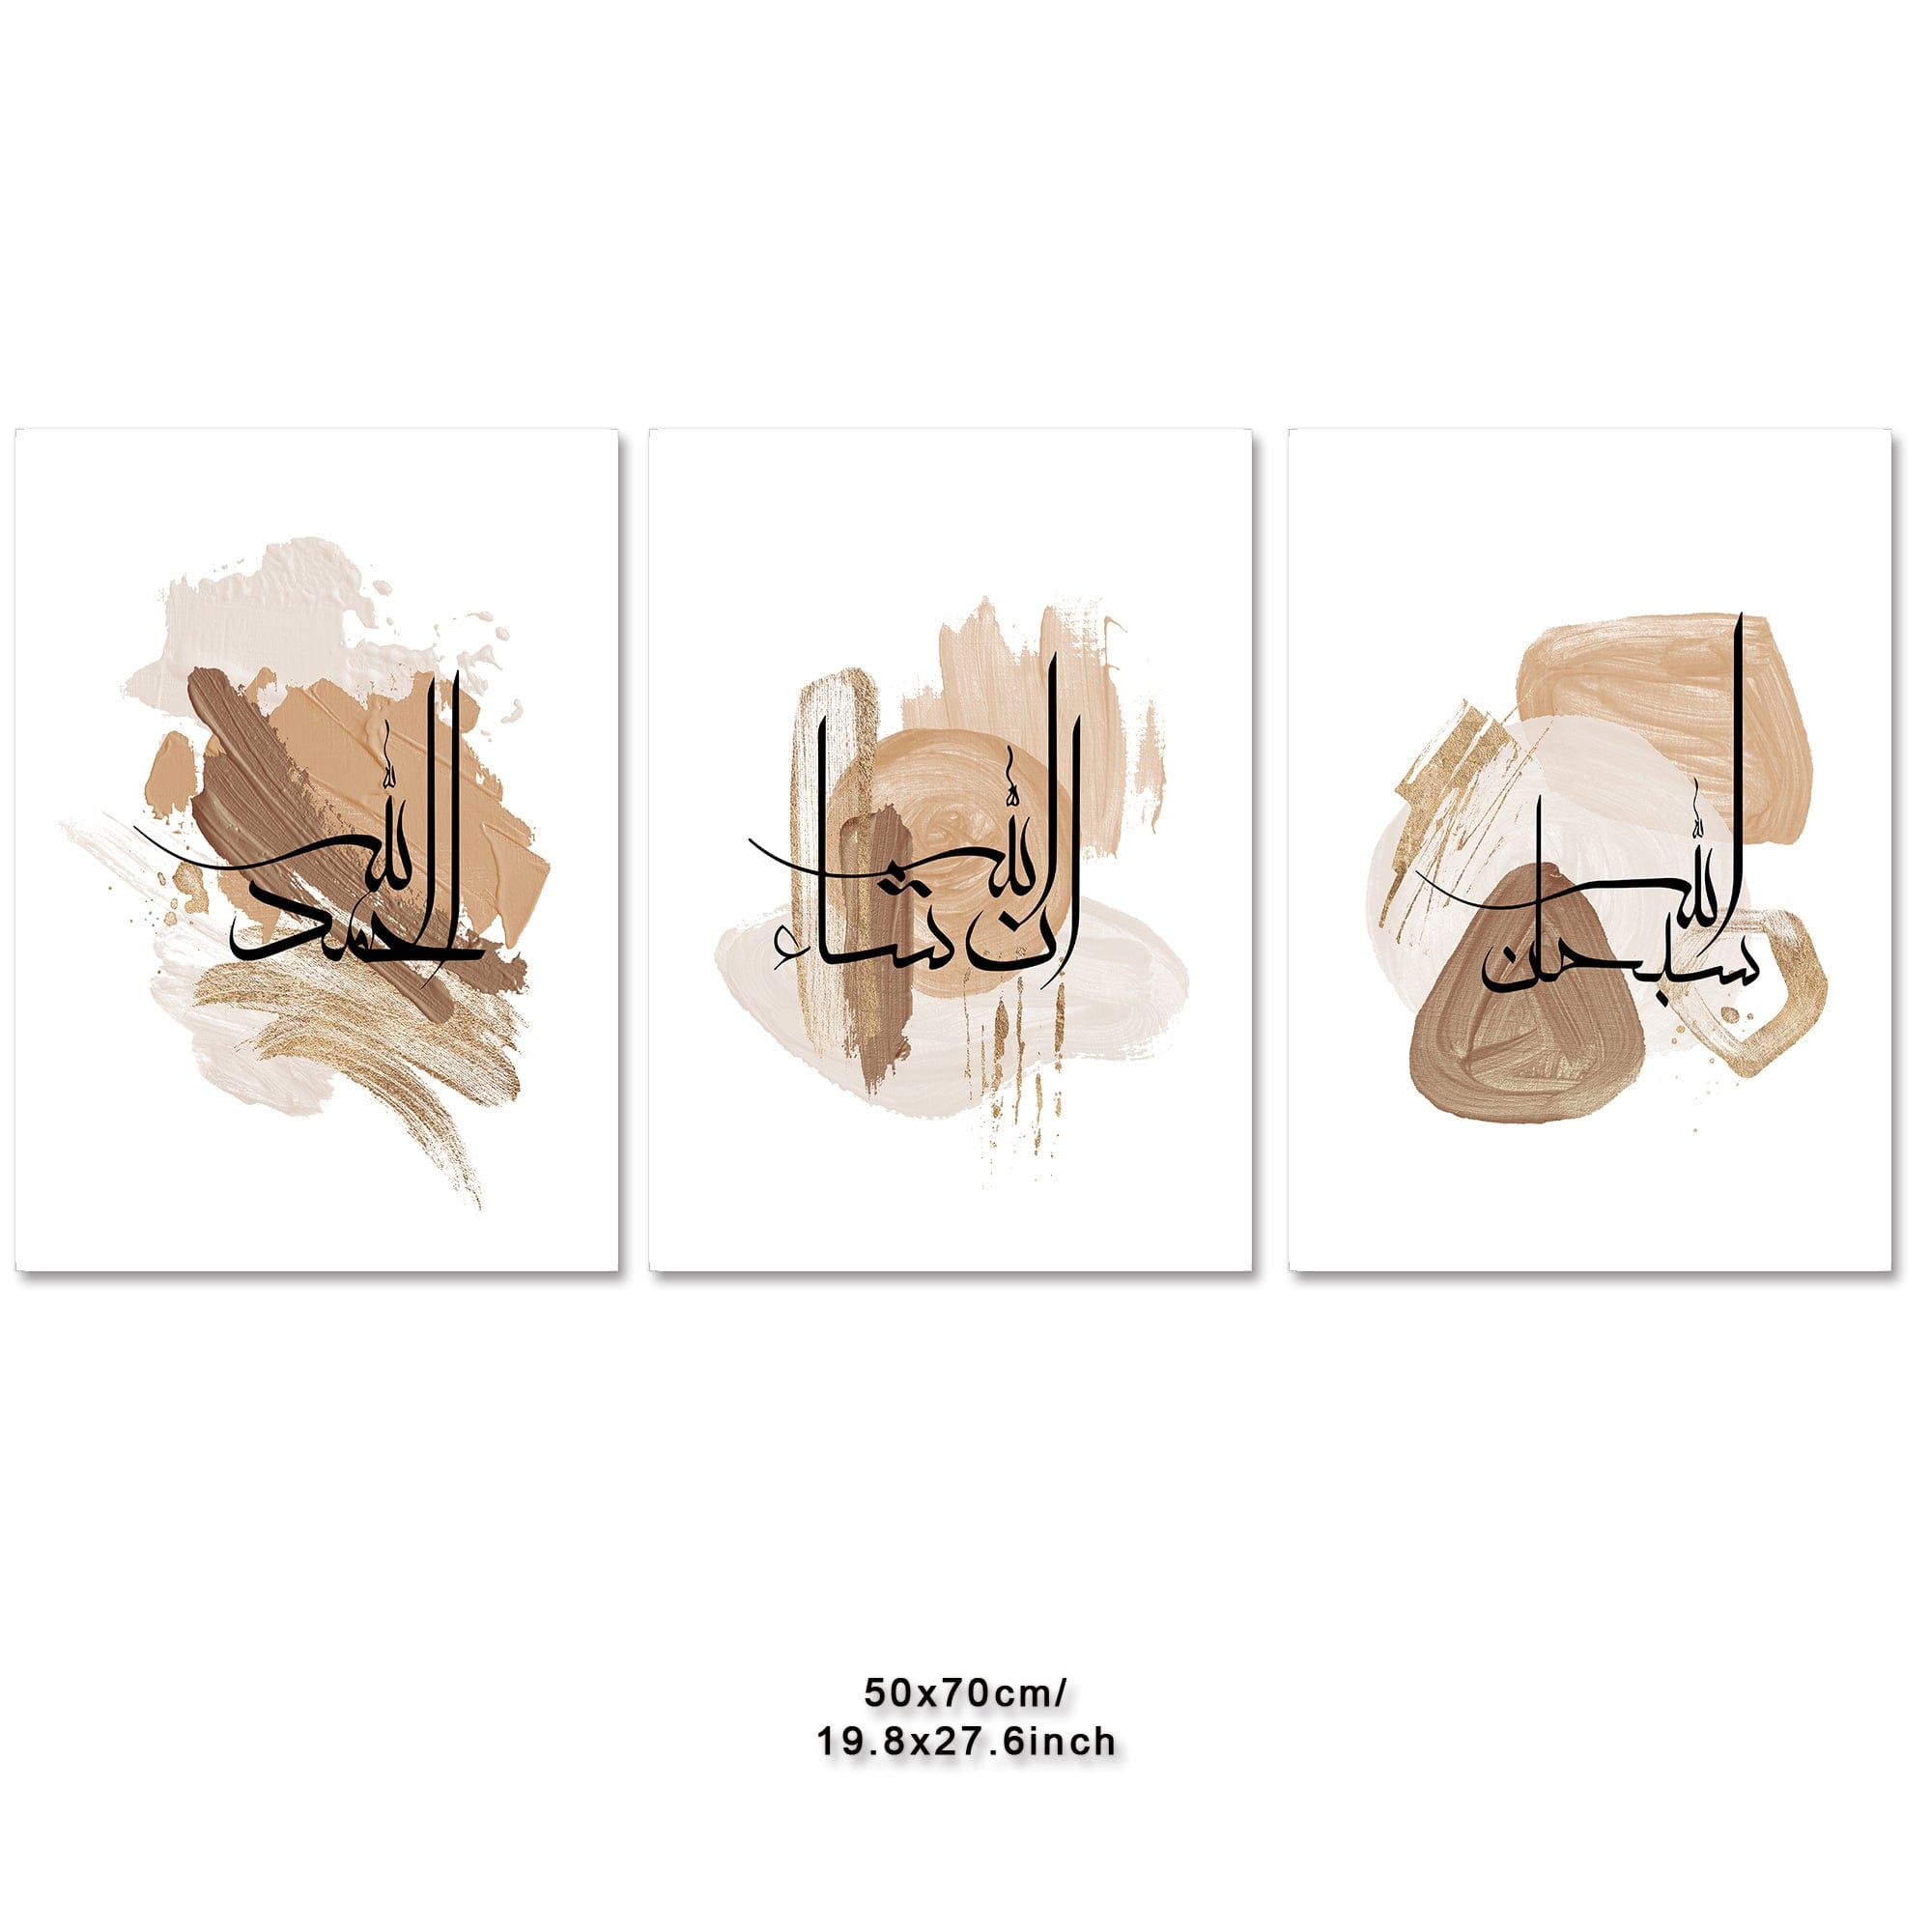 deen-souvenir customized Farbe Nr. 17 / 50 X 70 Cm 3-teiliges Islamisches Leinwandbild mit Motivationszitat - Typografie Kunstwerk 17592238194047